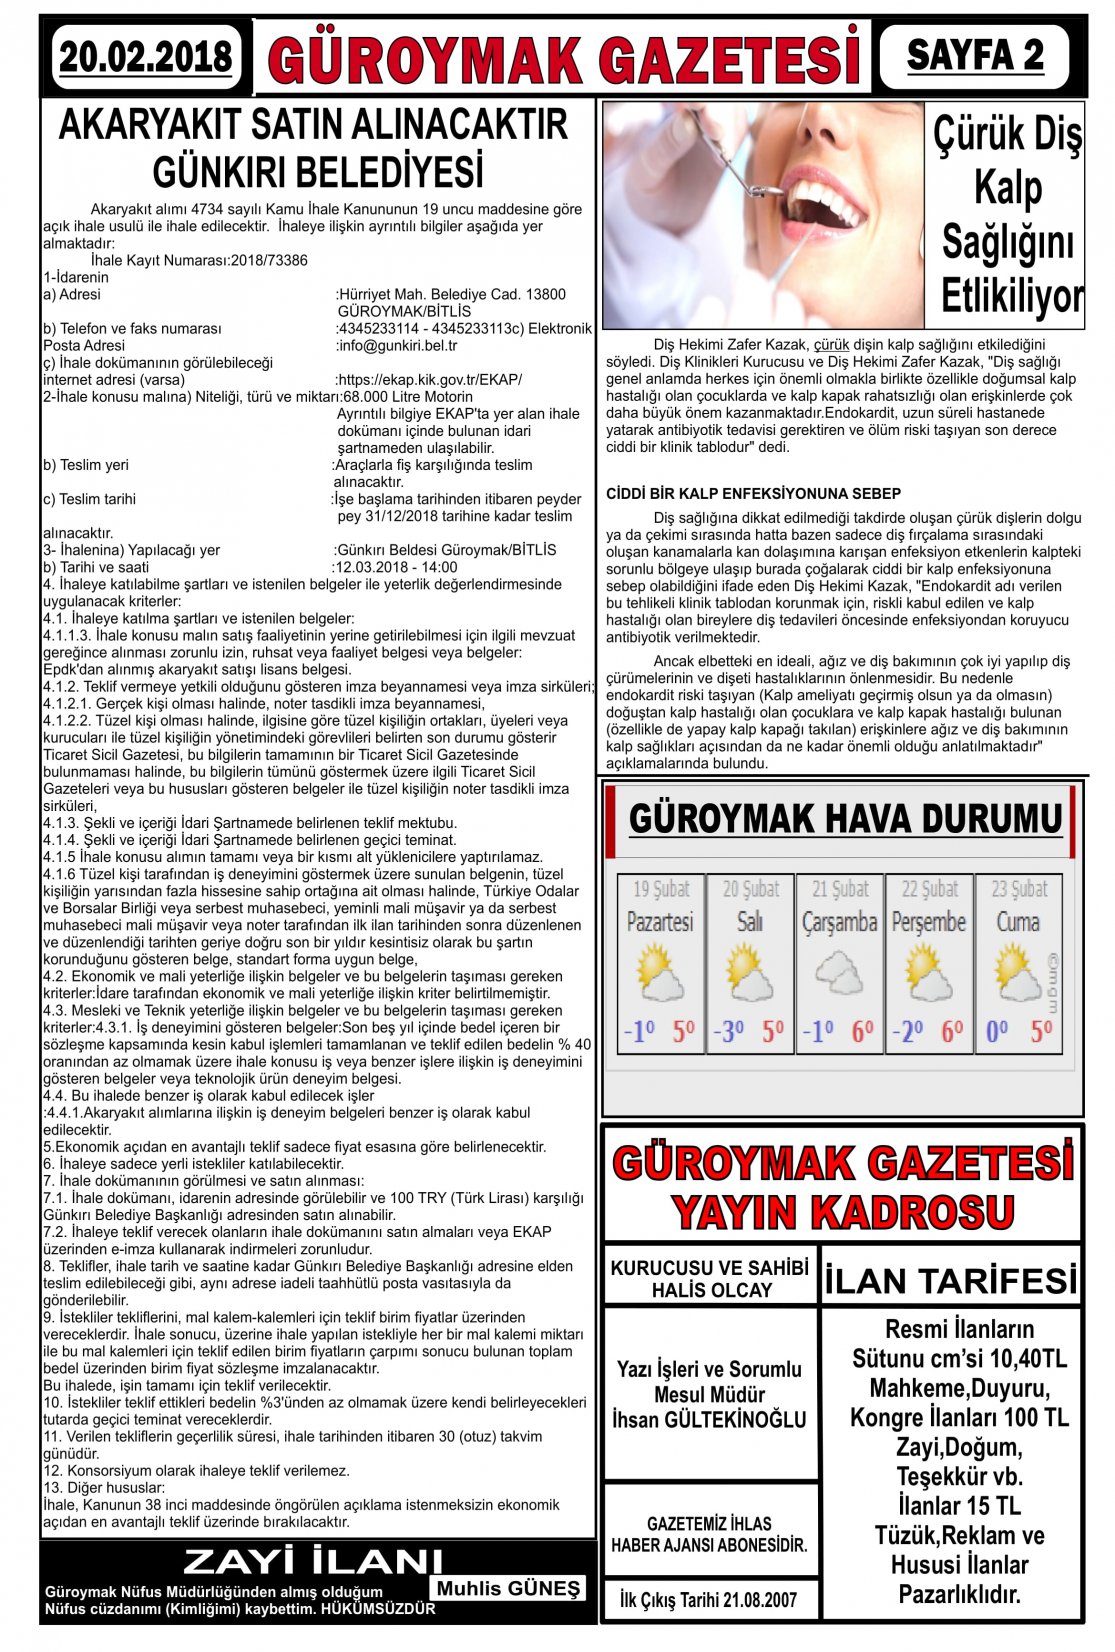 Güroymak Gazetesi 2-1.jpg Sayılı Gazete Küpürü